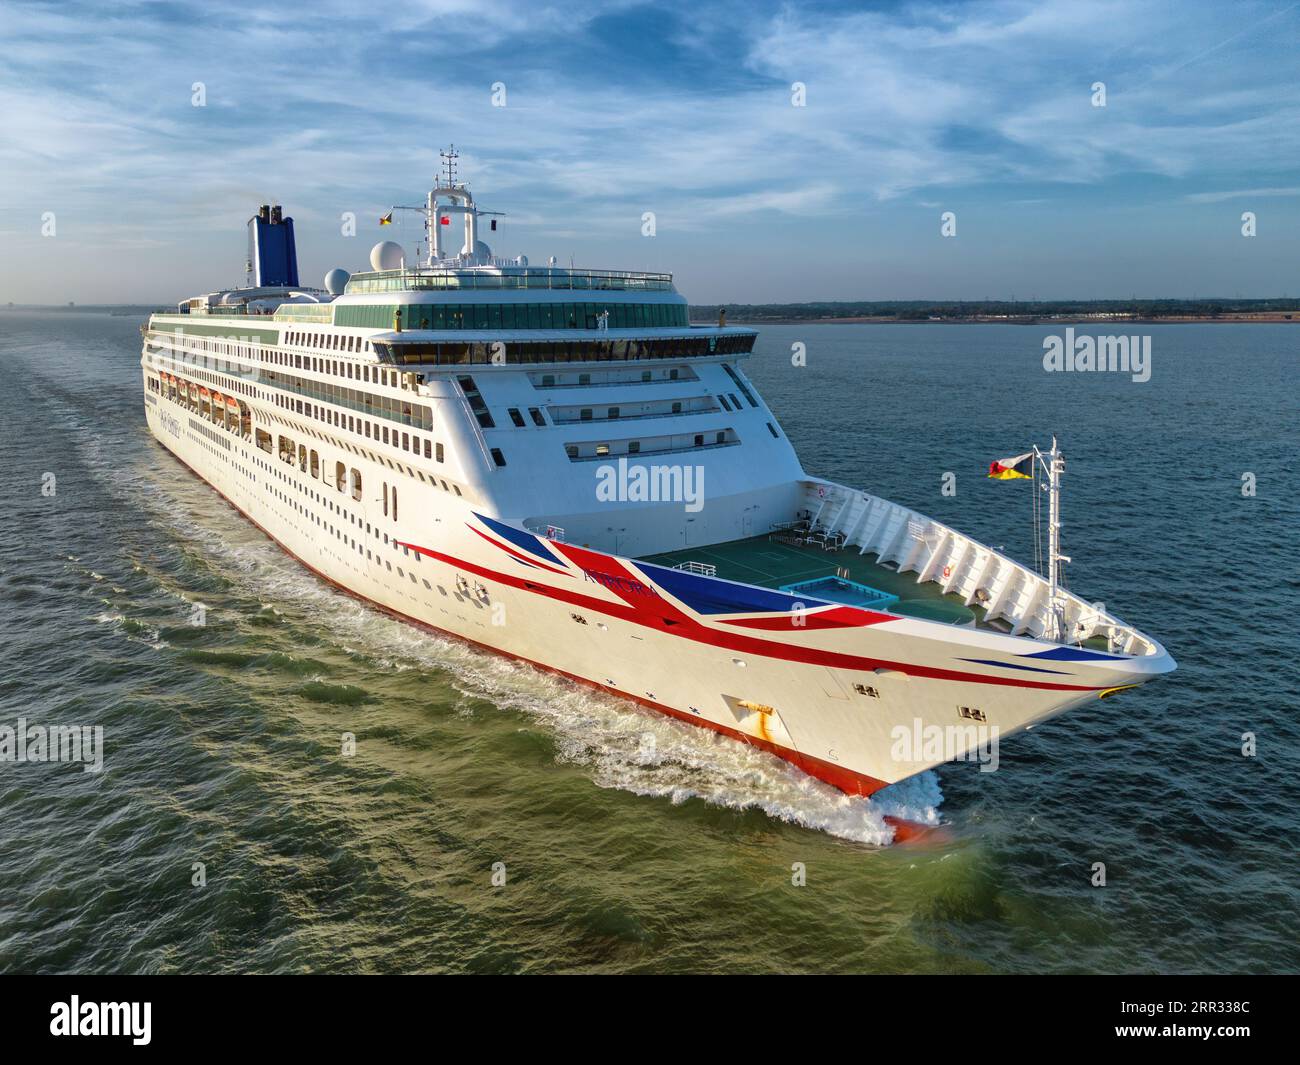 Aurora est un navire de croisière exploité par P&O Cruises, qui fait partie de Carnival Corporation. Banque D'Images